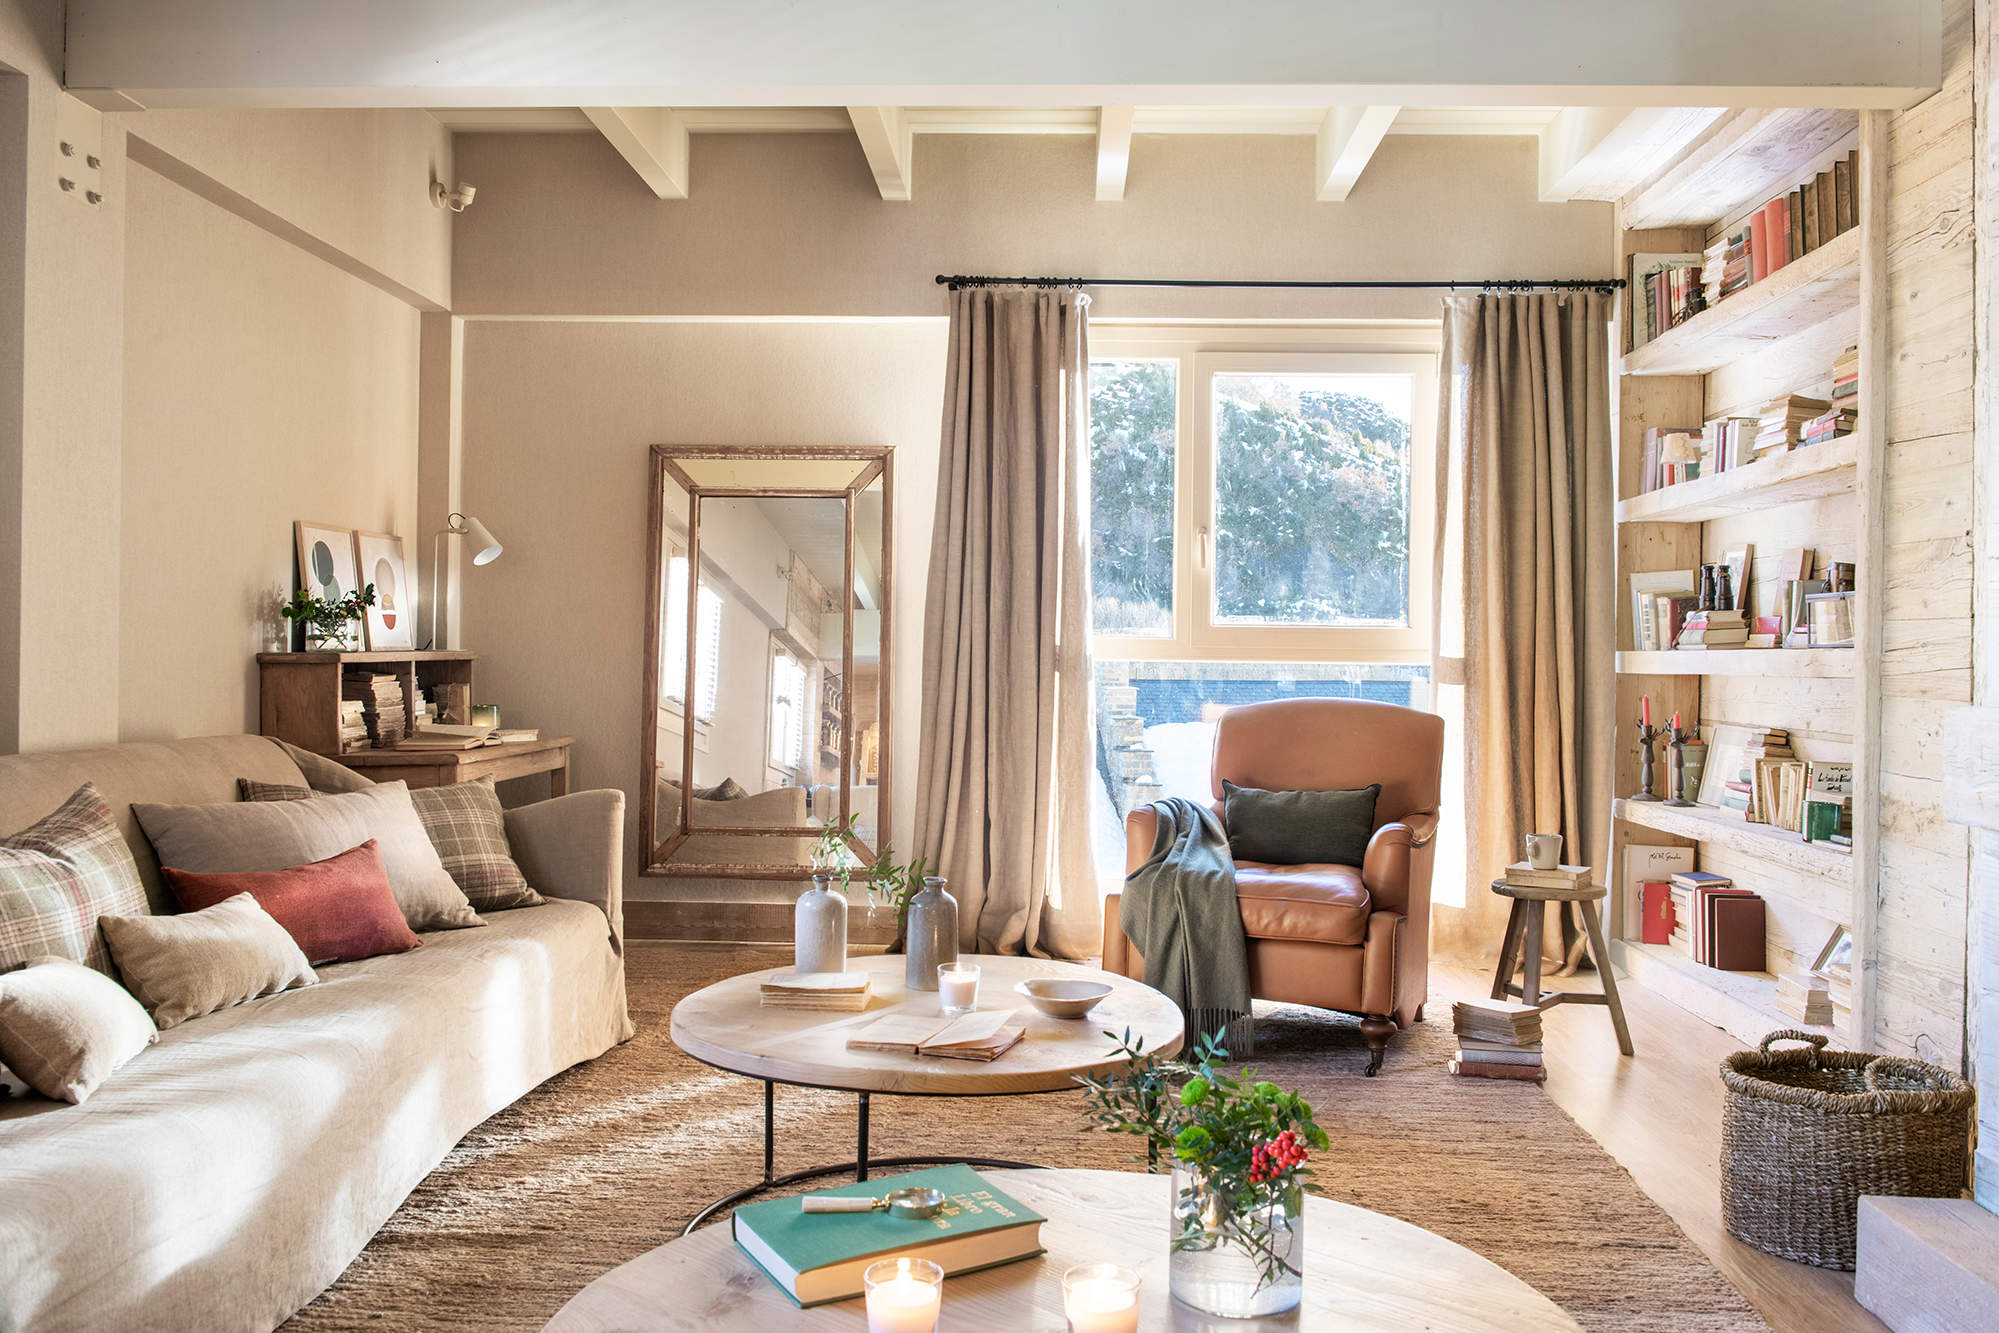 Salón rústico en beige, estantería de madera, sofá, cortinas y espejo de pie